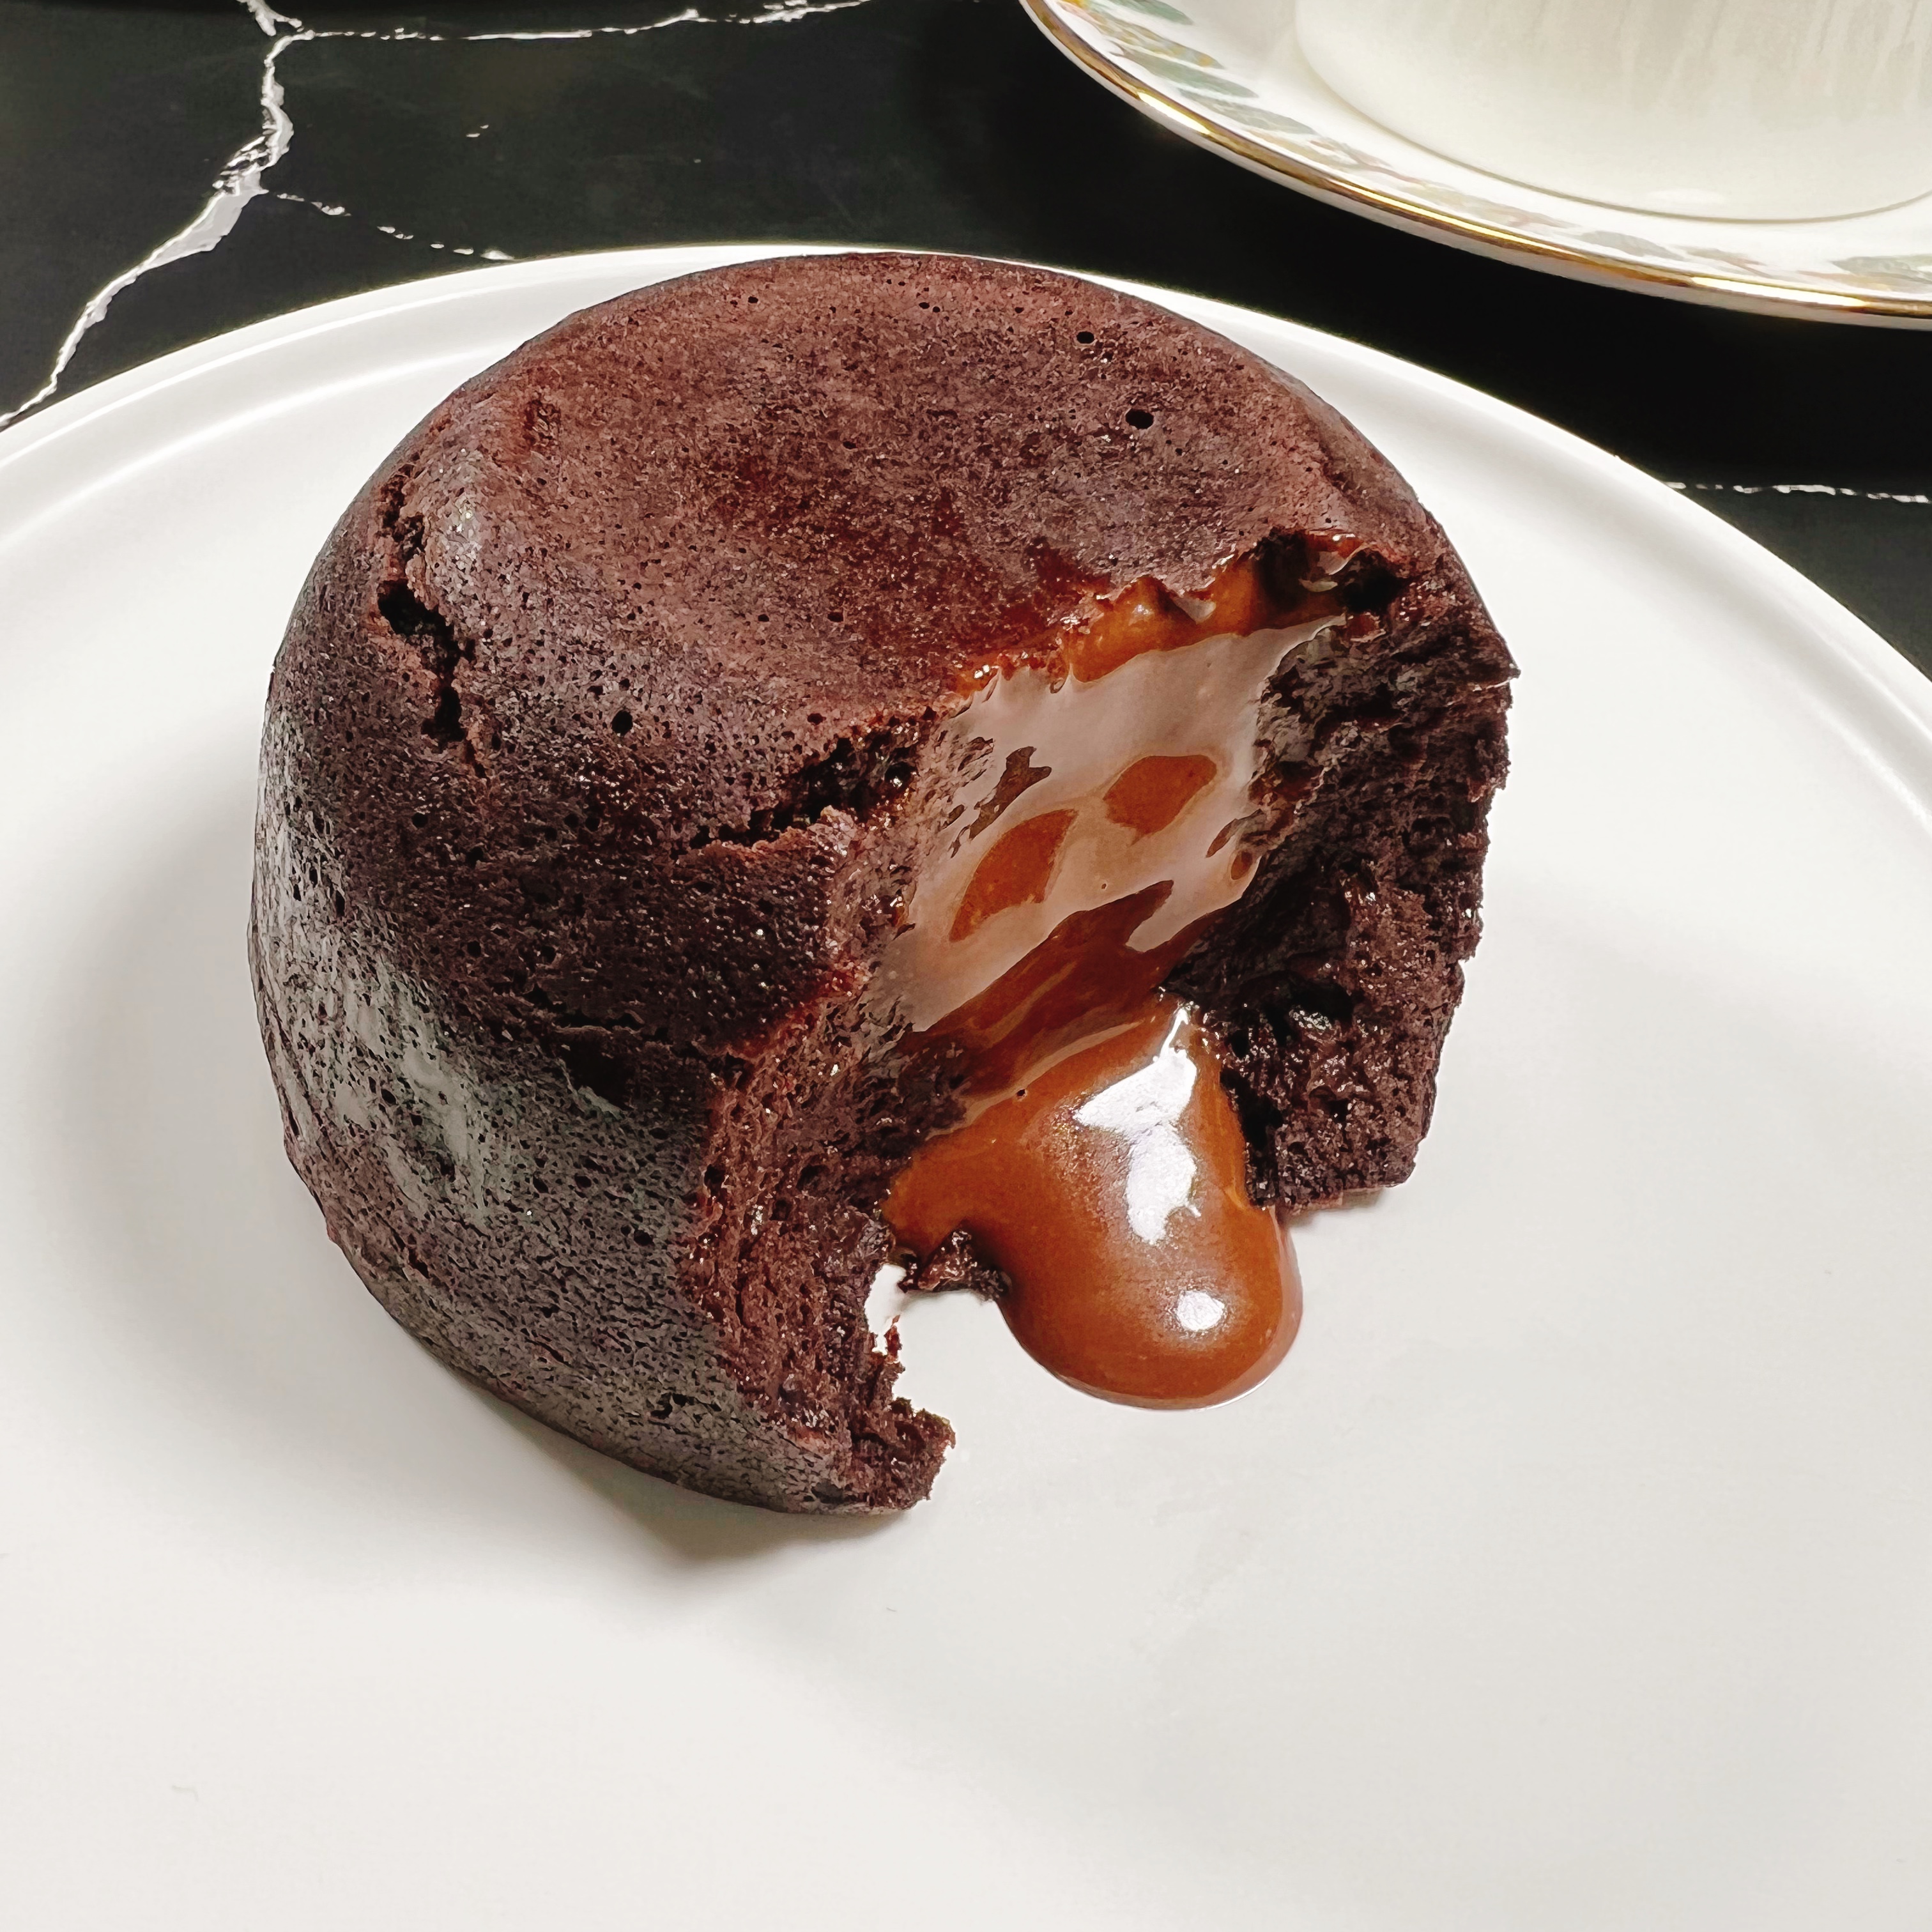 紫薯爆浆熔岩蛋糕 婷子低卡美食铺 巧克力布朗尼无面粉不加蔗糖油 - 图1